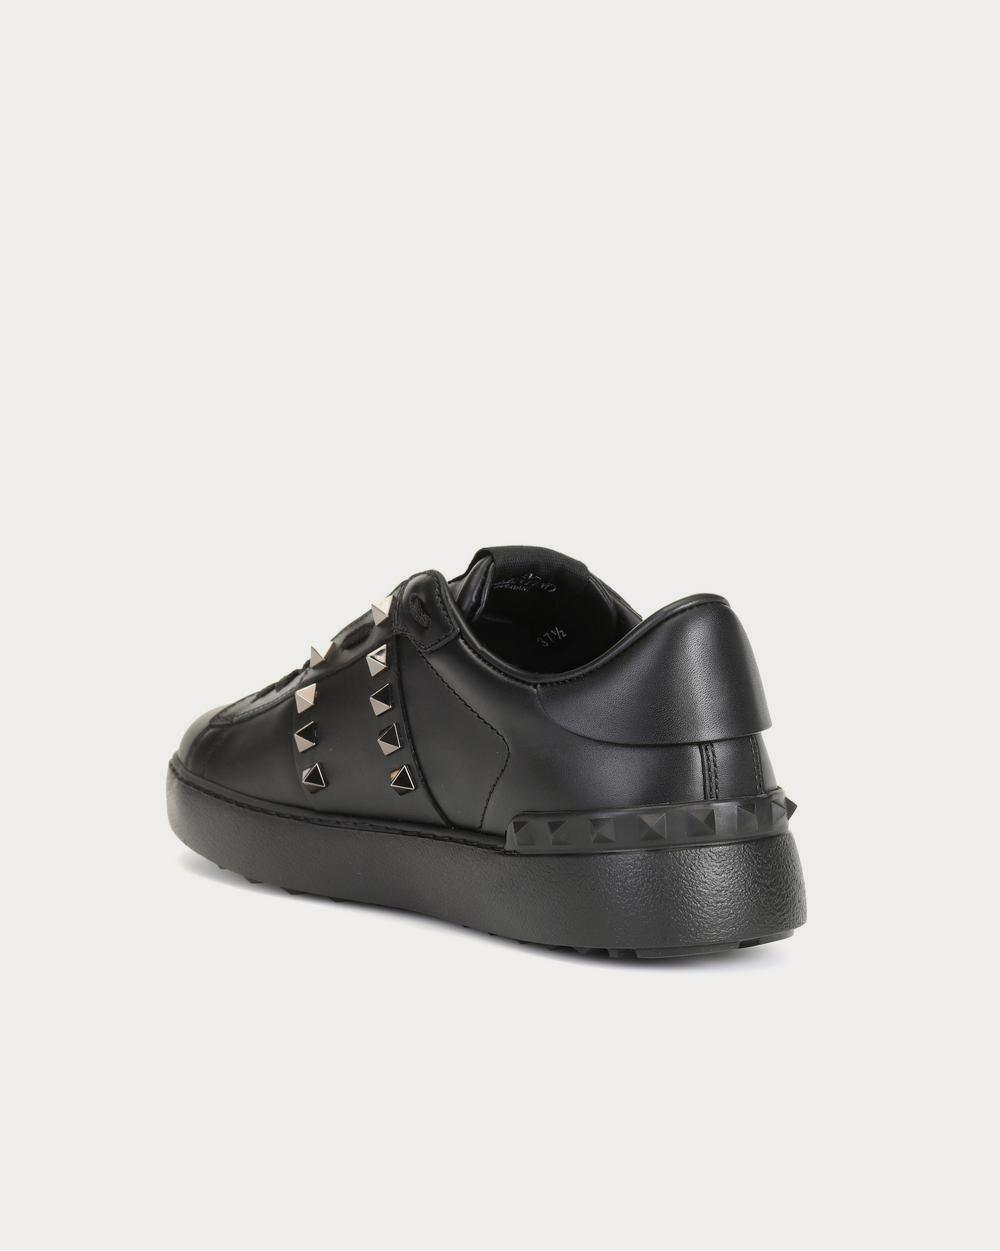 VALENTINO GARAVANI - Rockstud Untitled Leather Sneakers